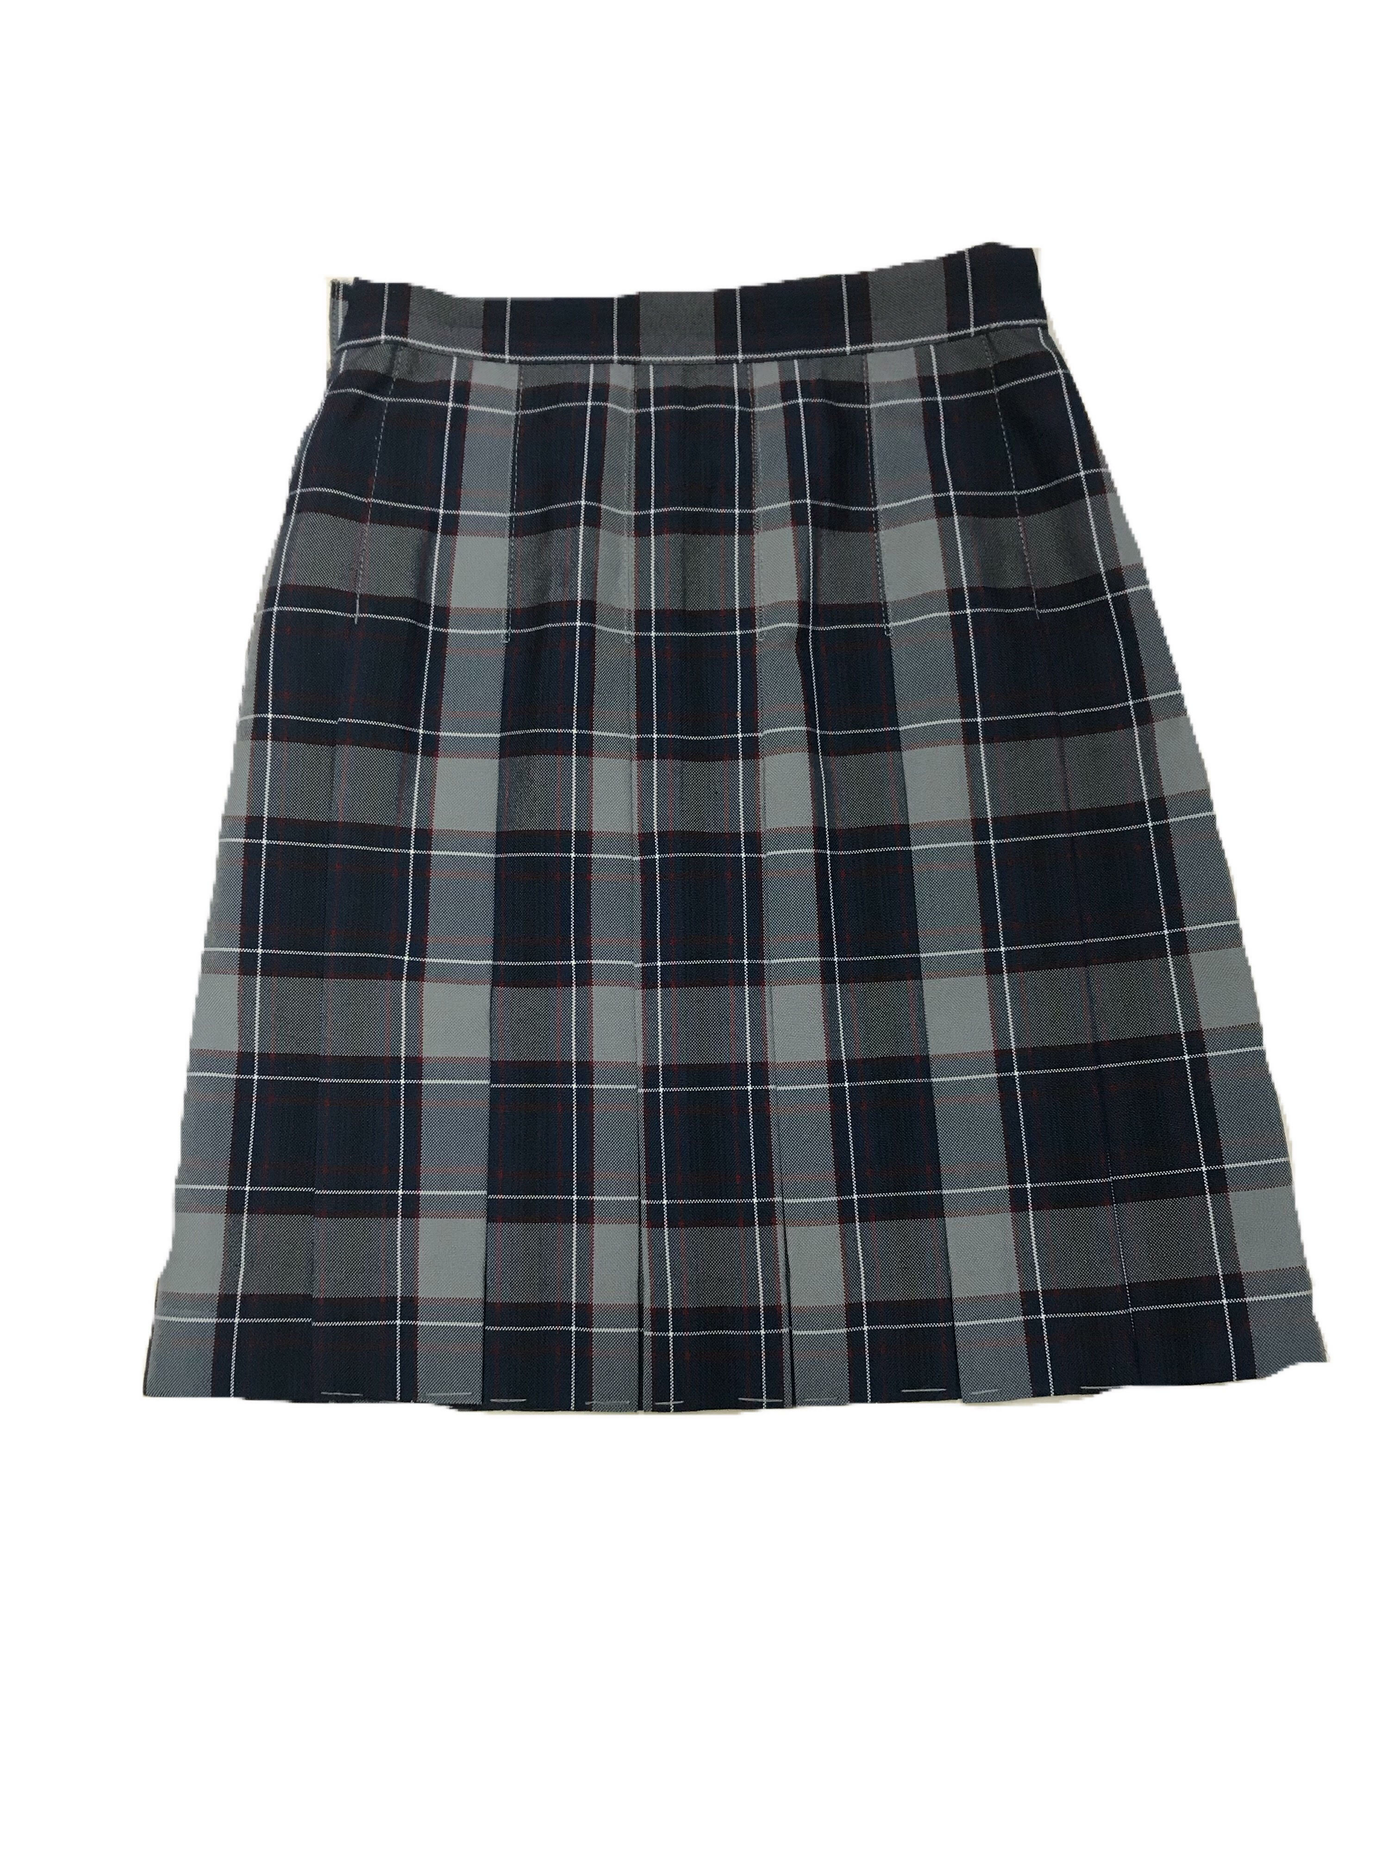 SHCS plaid skirt